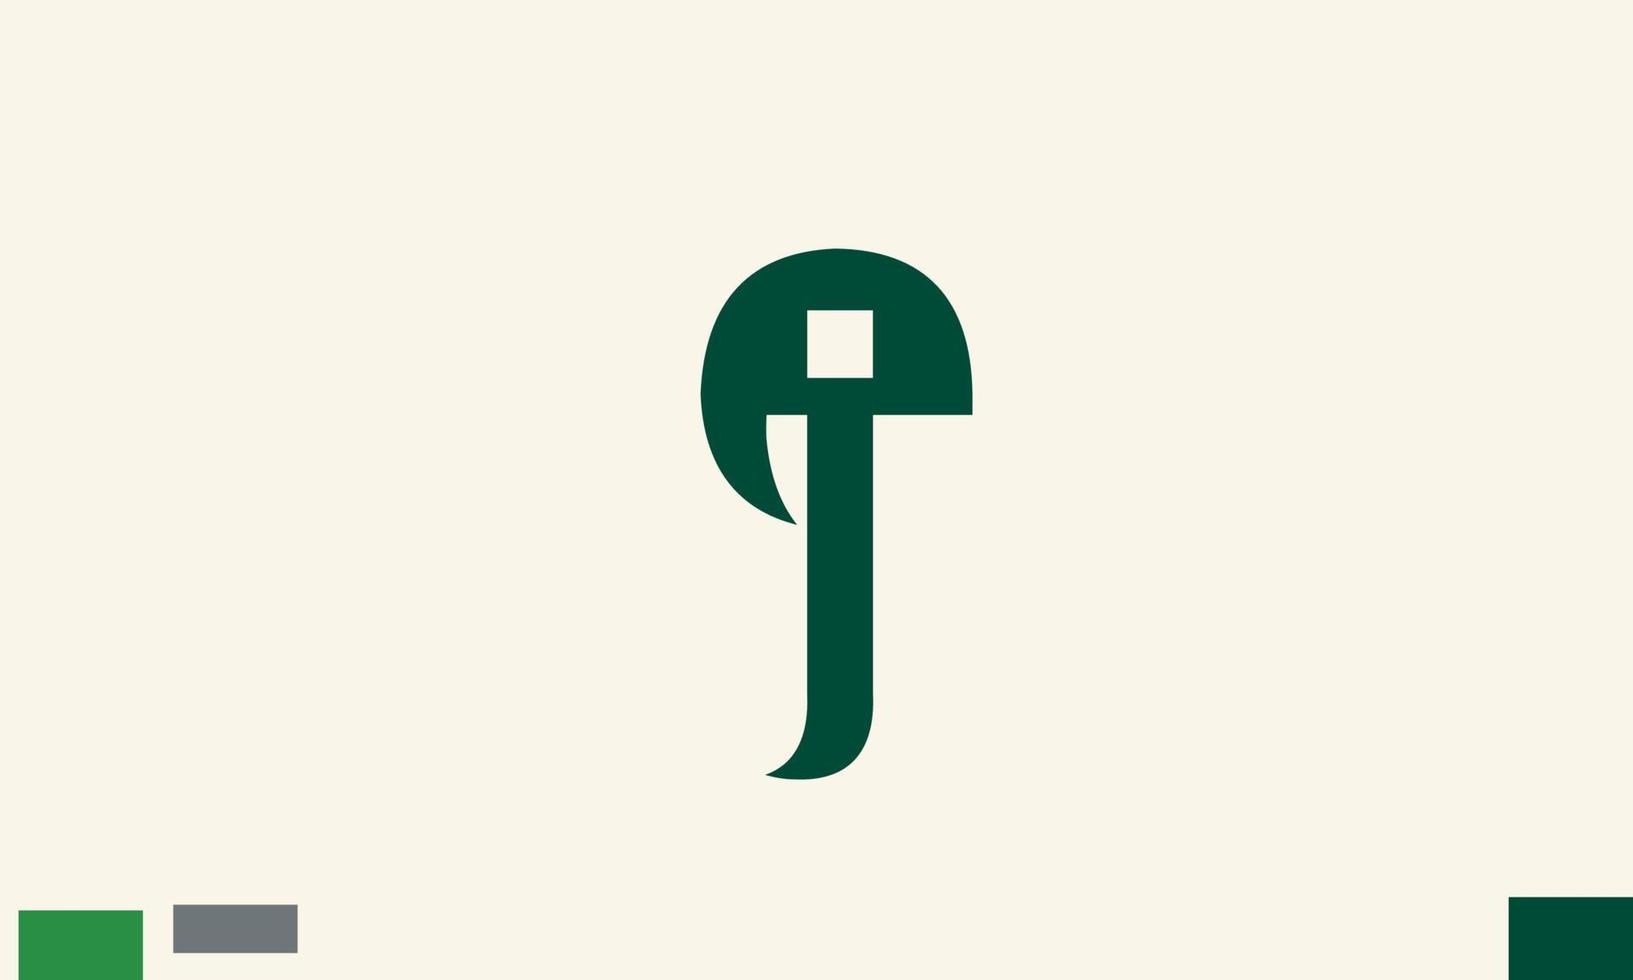 Alphabet letters Initials Monogram logo EJ, JE, E and J vector